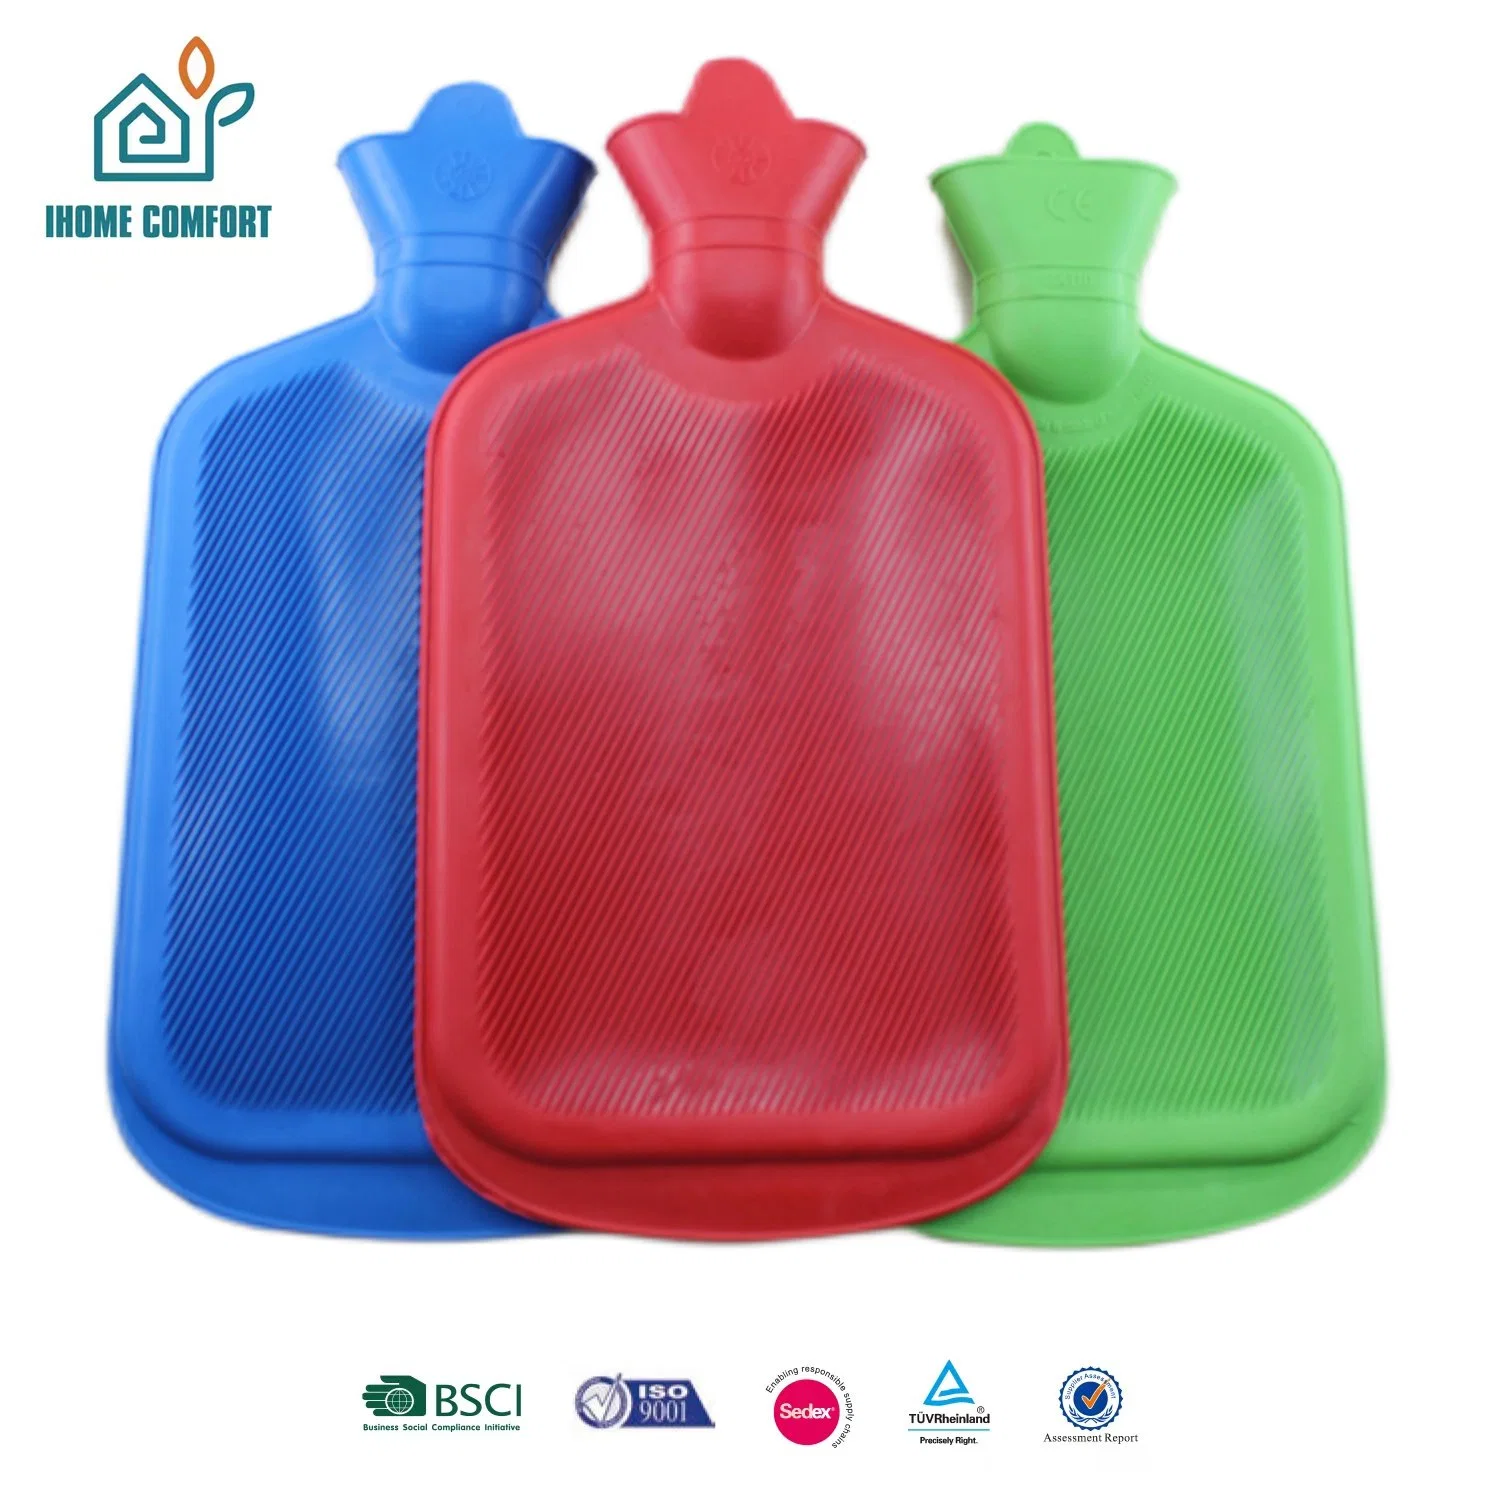 Gummi Klassische Heißwasserflasche Verdickt Tragbare Wasser Gefüllt Explosionsgeschützt Täglich Produkt Verwenden